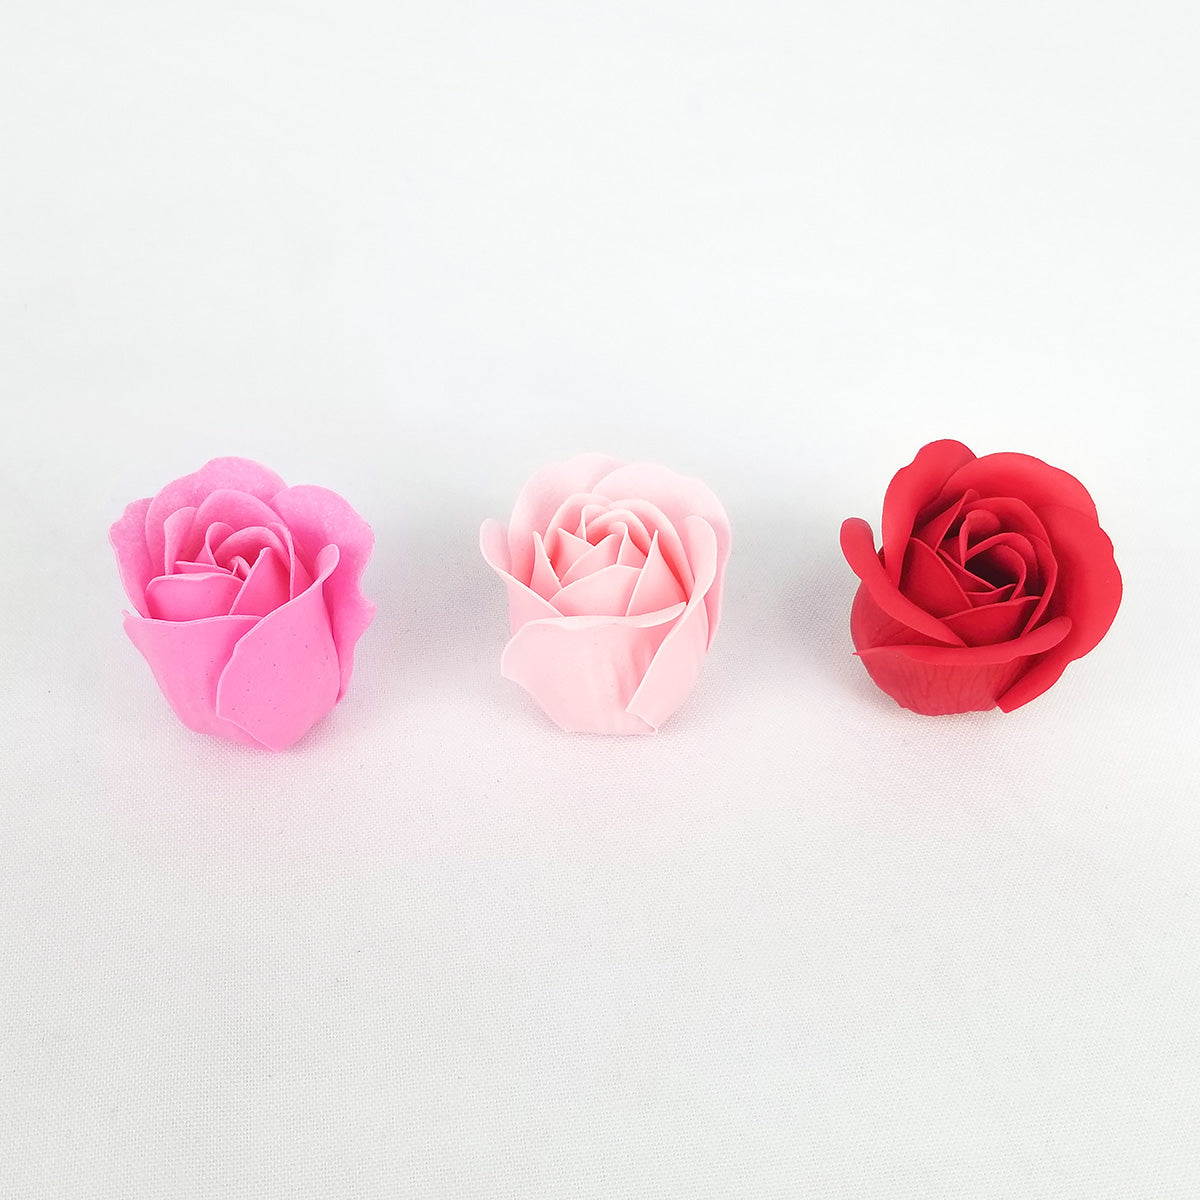 It's the Bomb - Rose Petals Soap Set